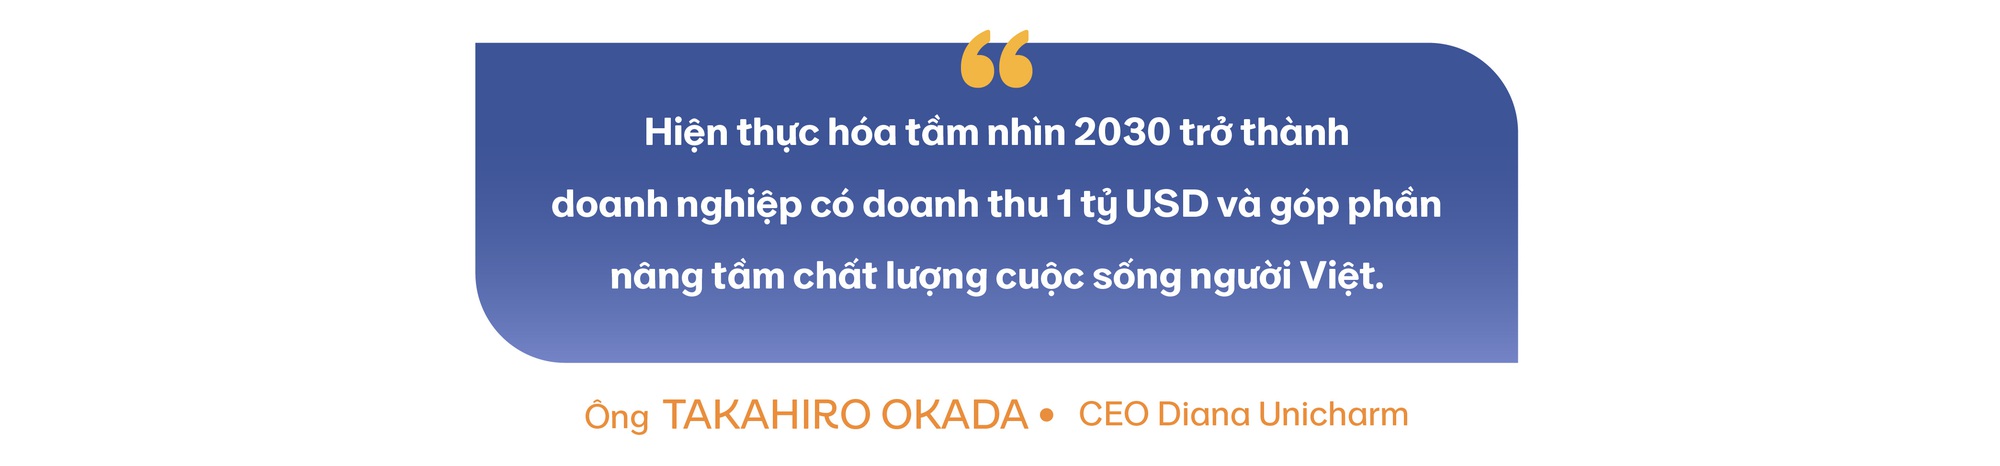 Tầm nhìn tỷ đô và mối duyên lành của CEO người Nhật tại Diana Unicharm - Ảnh 5.